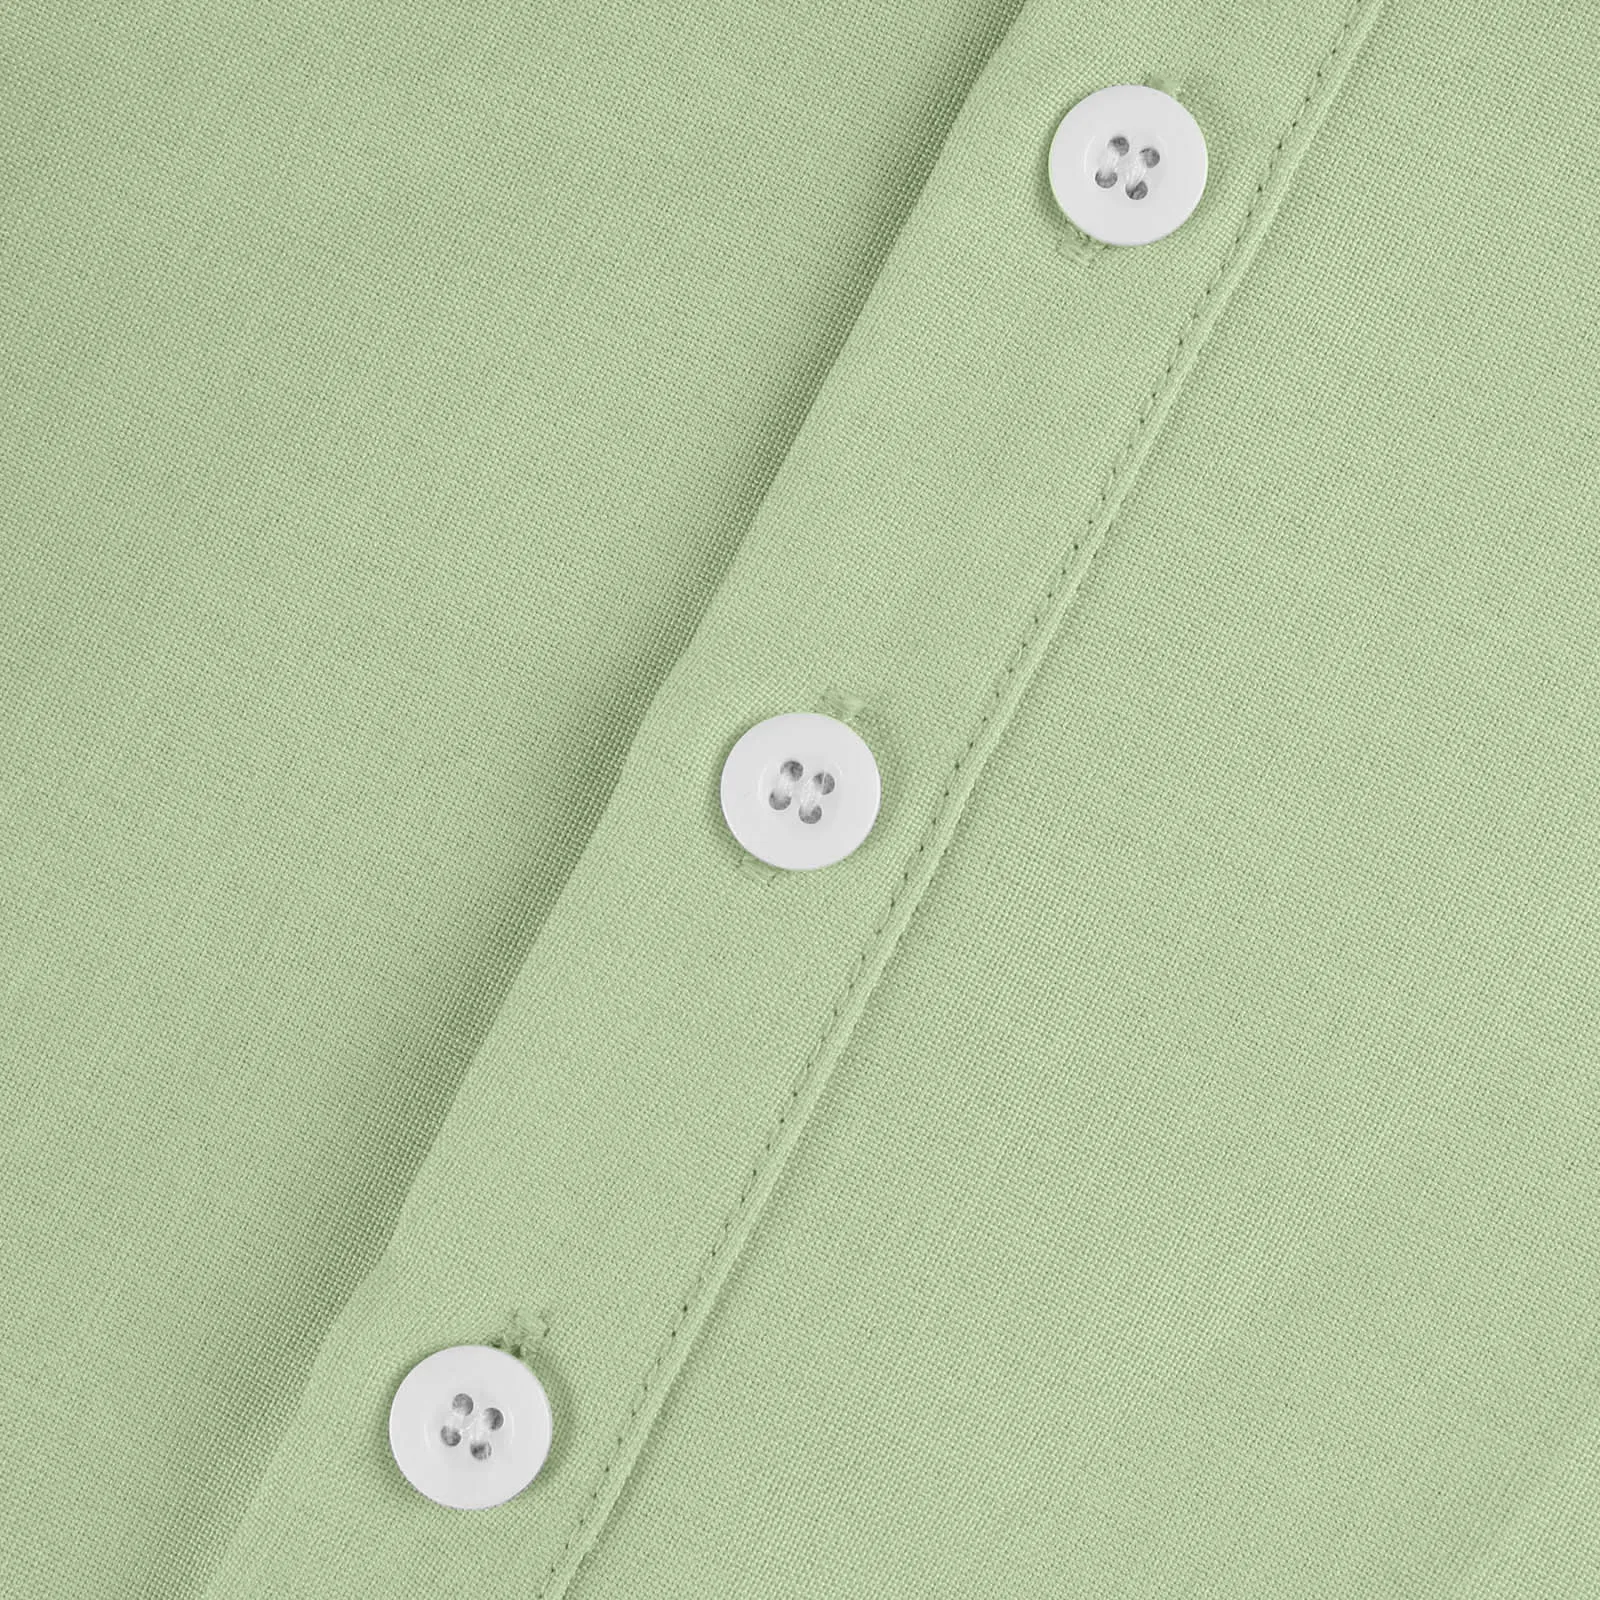 Camisa holgada de manga larga para hombre, ropa informal Vintage de algodón y lino, Color sólido